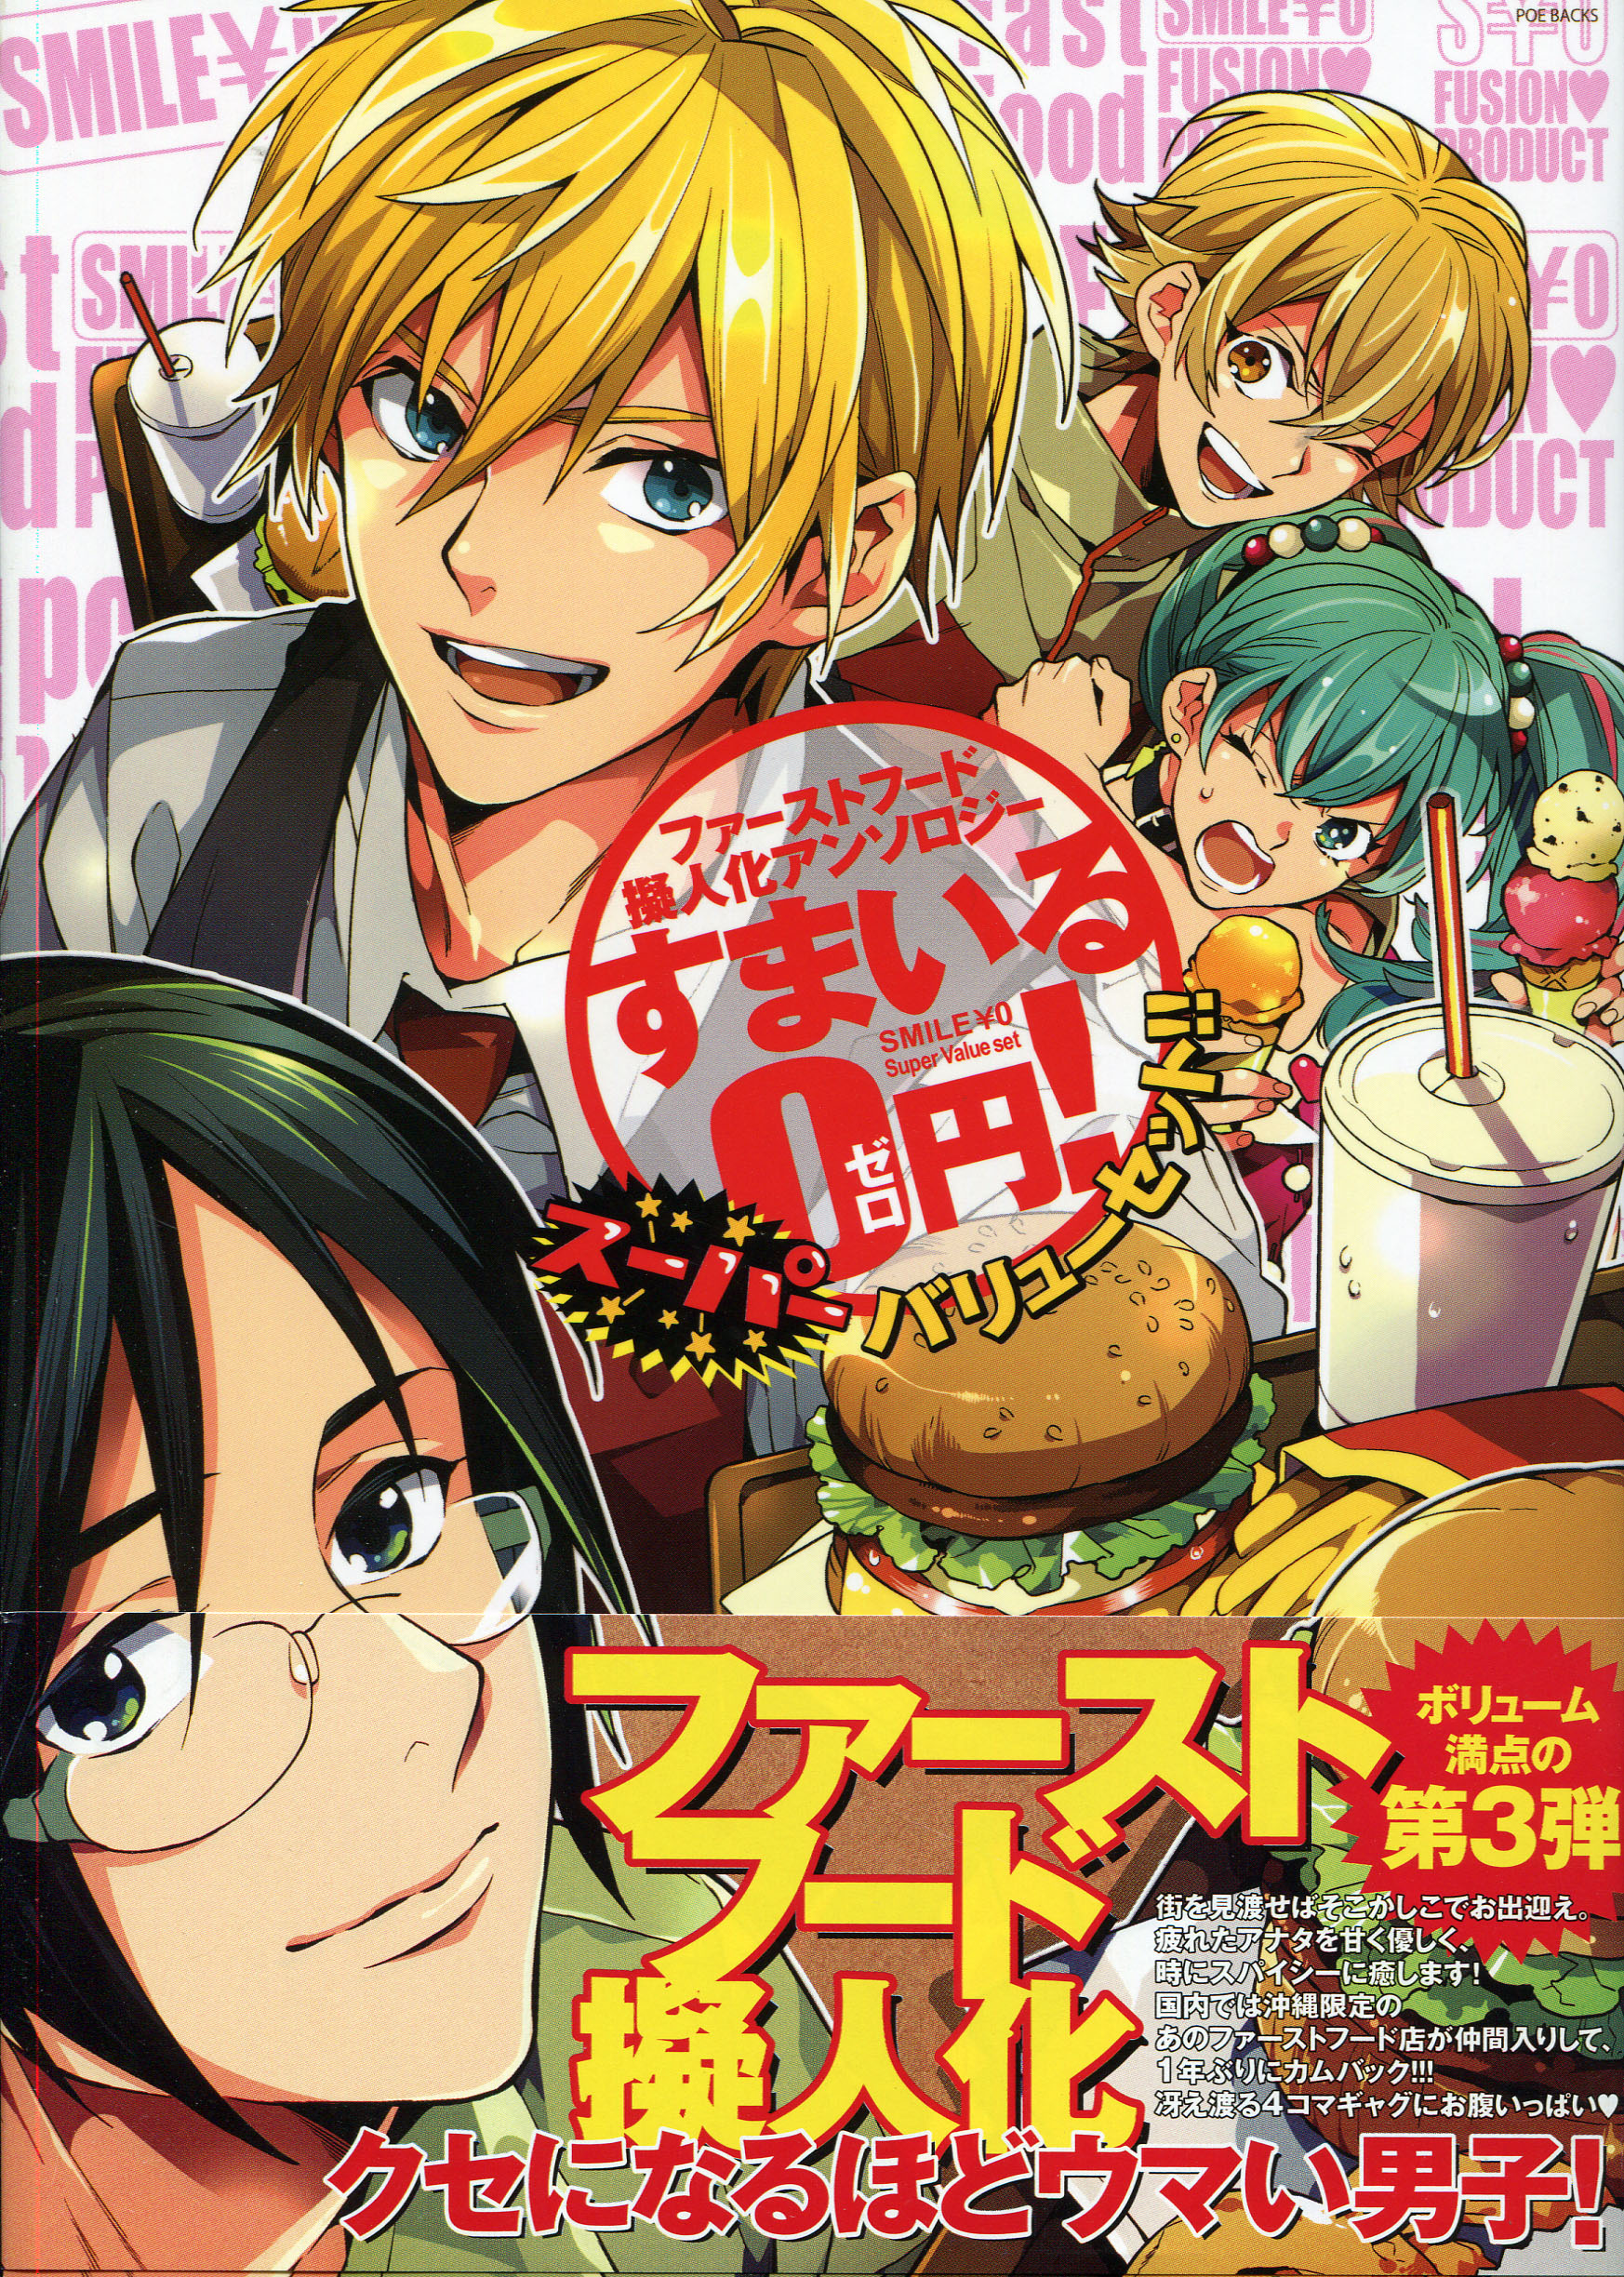 SMILE 0 yen! Super Value Set (Manga Anthology)